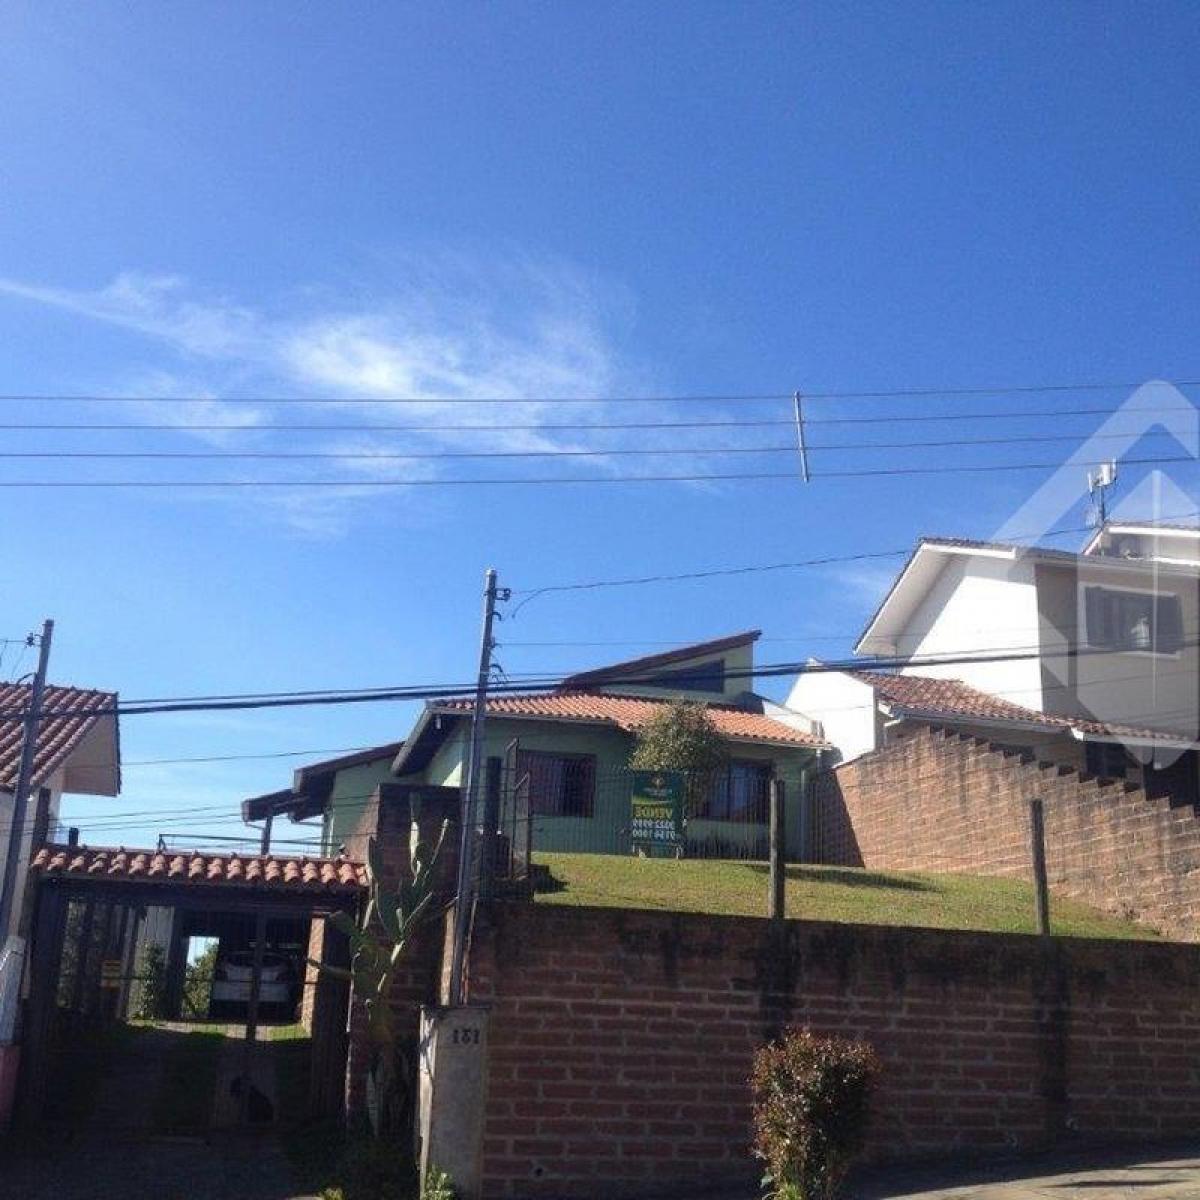 Picture of Home For Sale in Caxias Do Sul, Rio Grande do Sul, Brazil